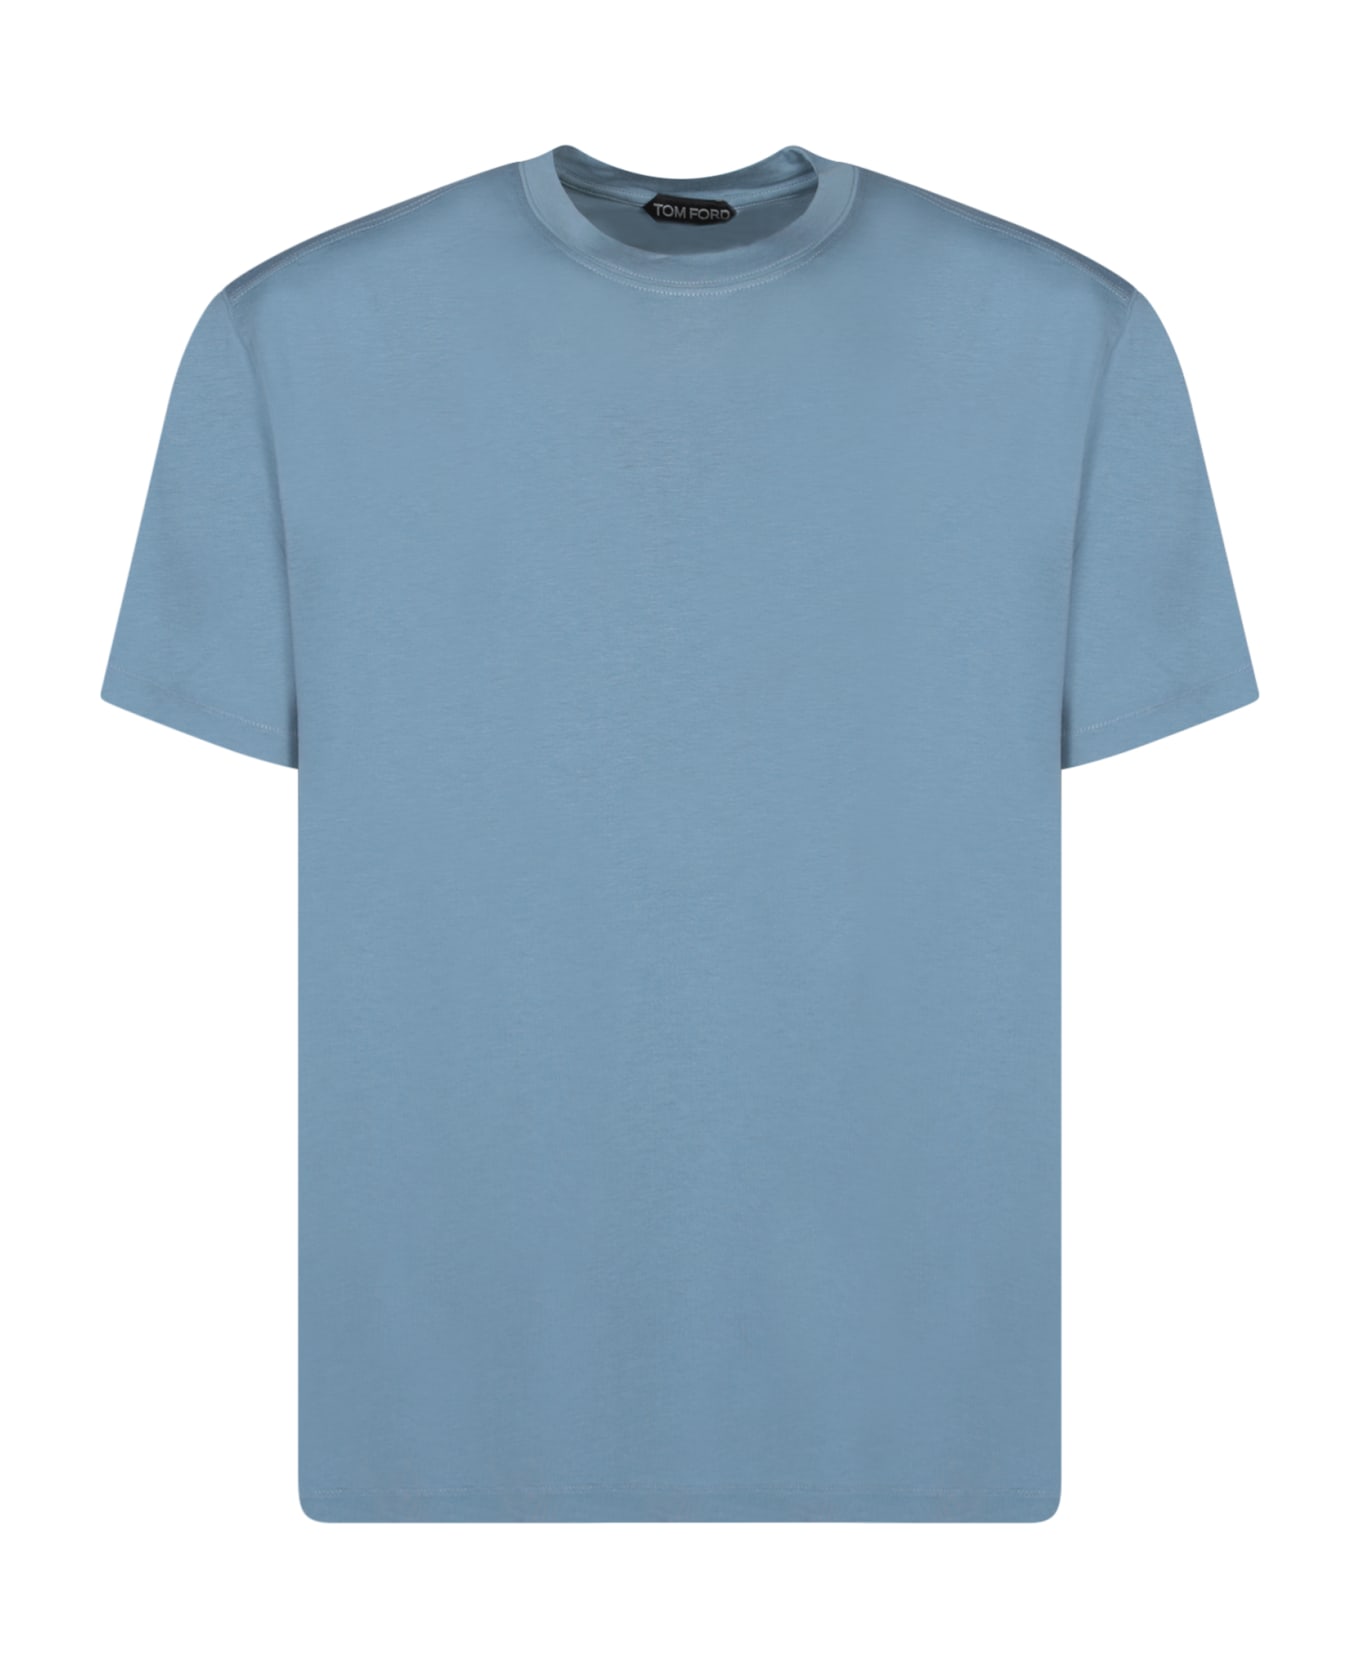 Tom Ford T-shirt - Sky Blue